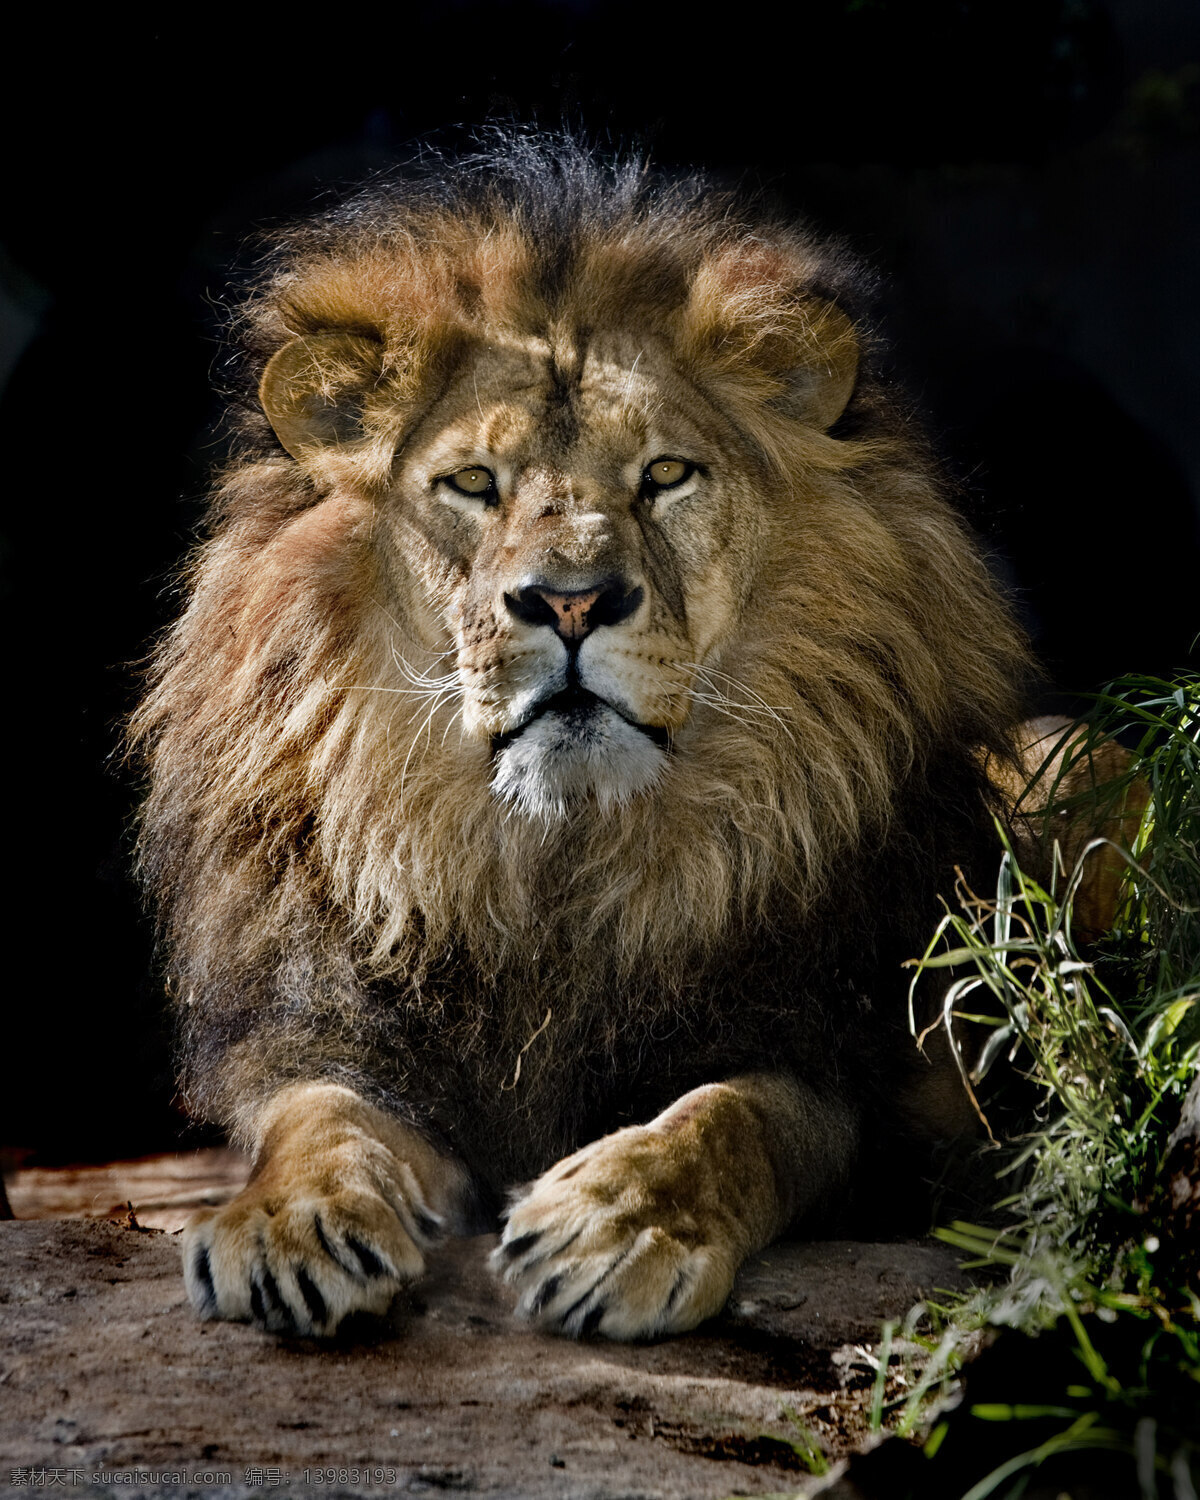 狮子高清图片 狮子 狮子王 野兽 猛兽 万兽之首 森林之王 特写 面部 野生 动物 生物世界 野生动物 高清图片